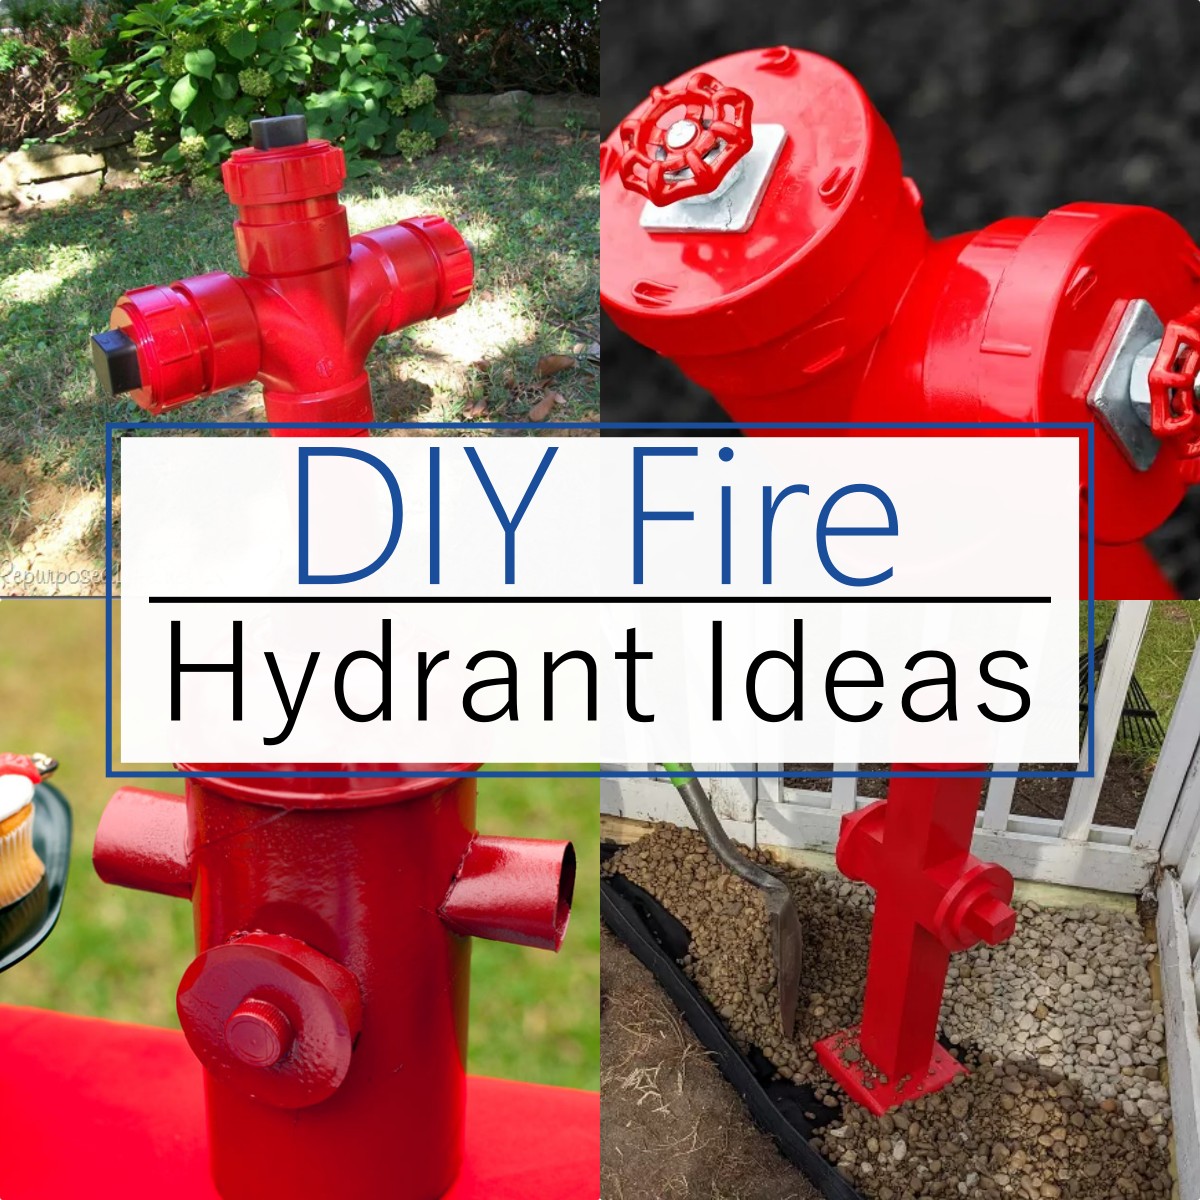 DIY Fire Hydrant Ideas